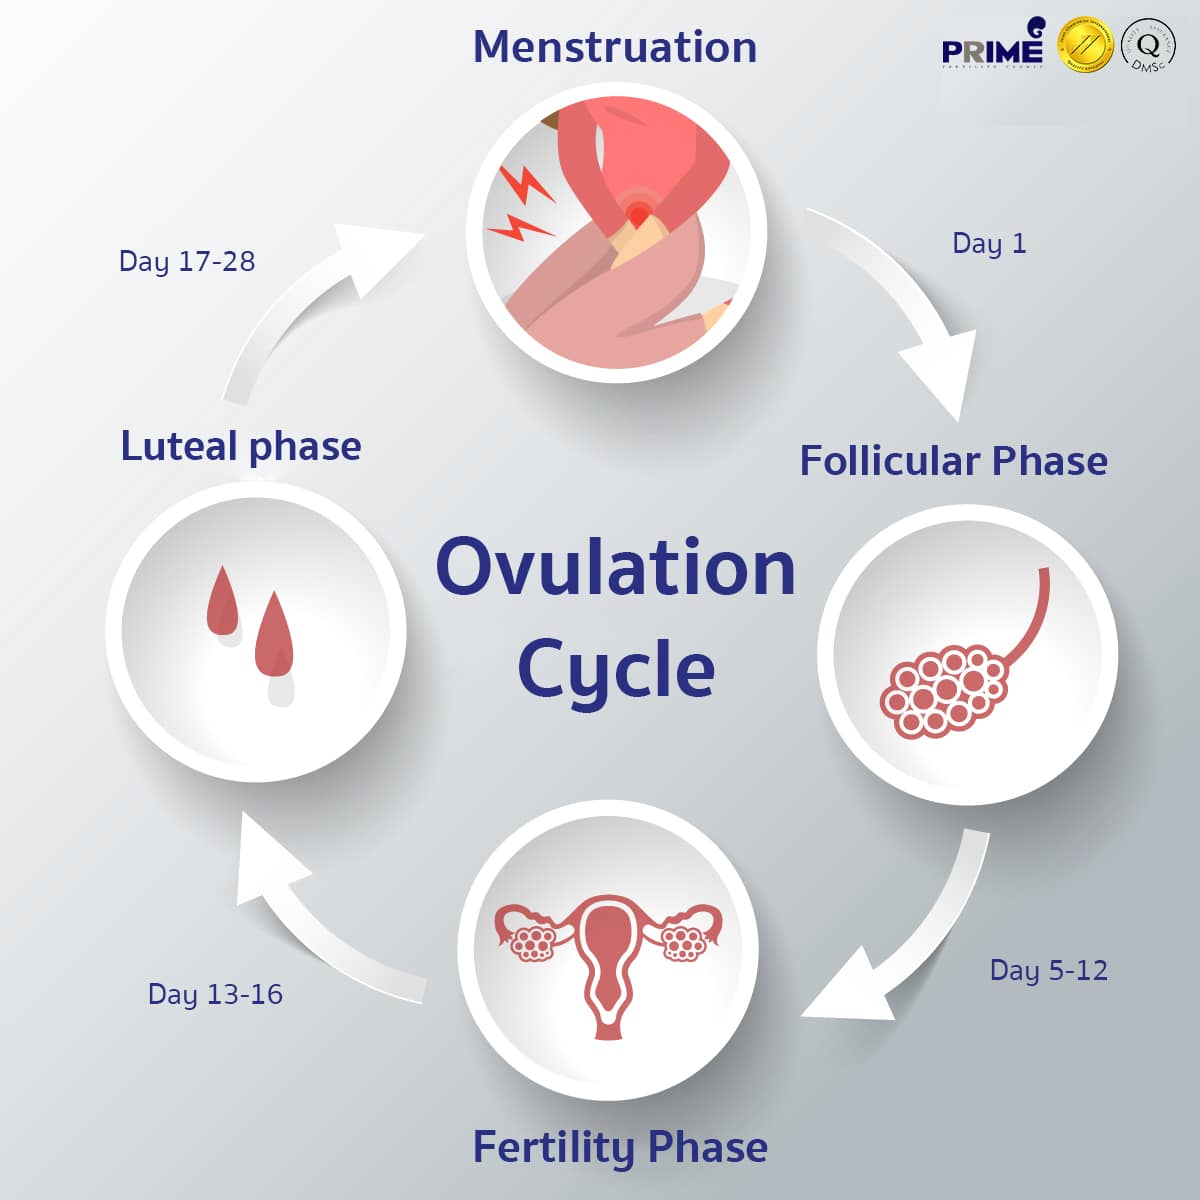 Ovulation Cycle